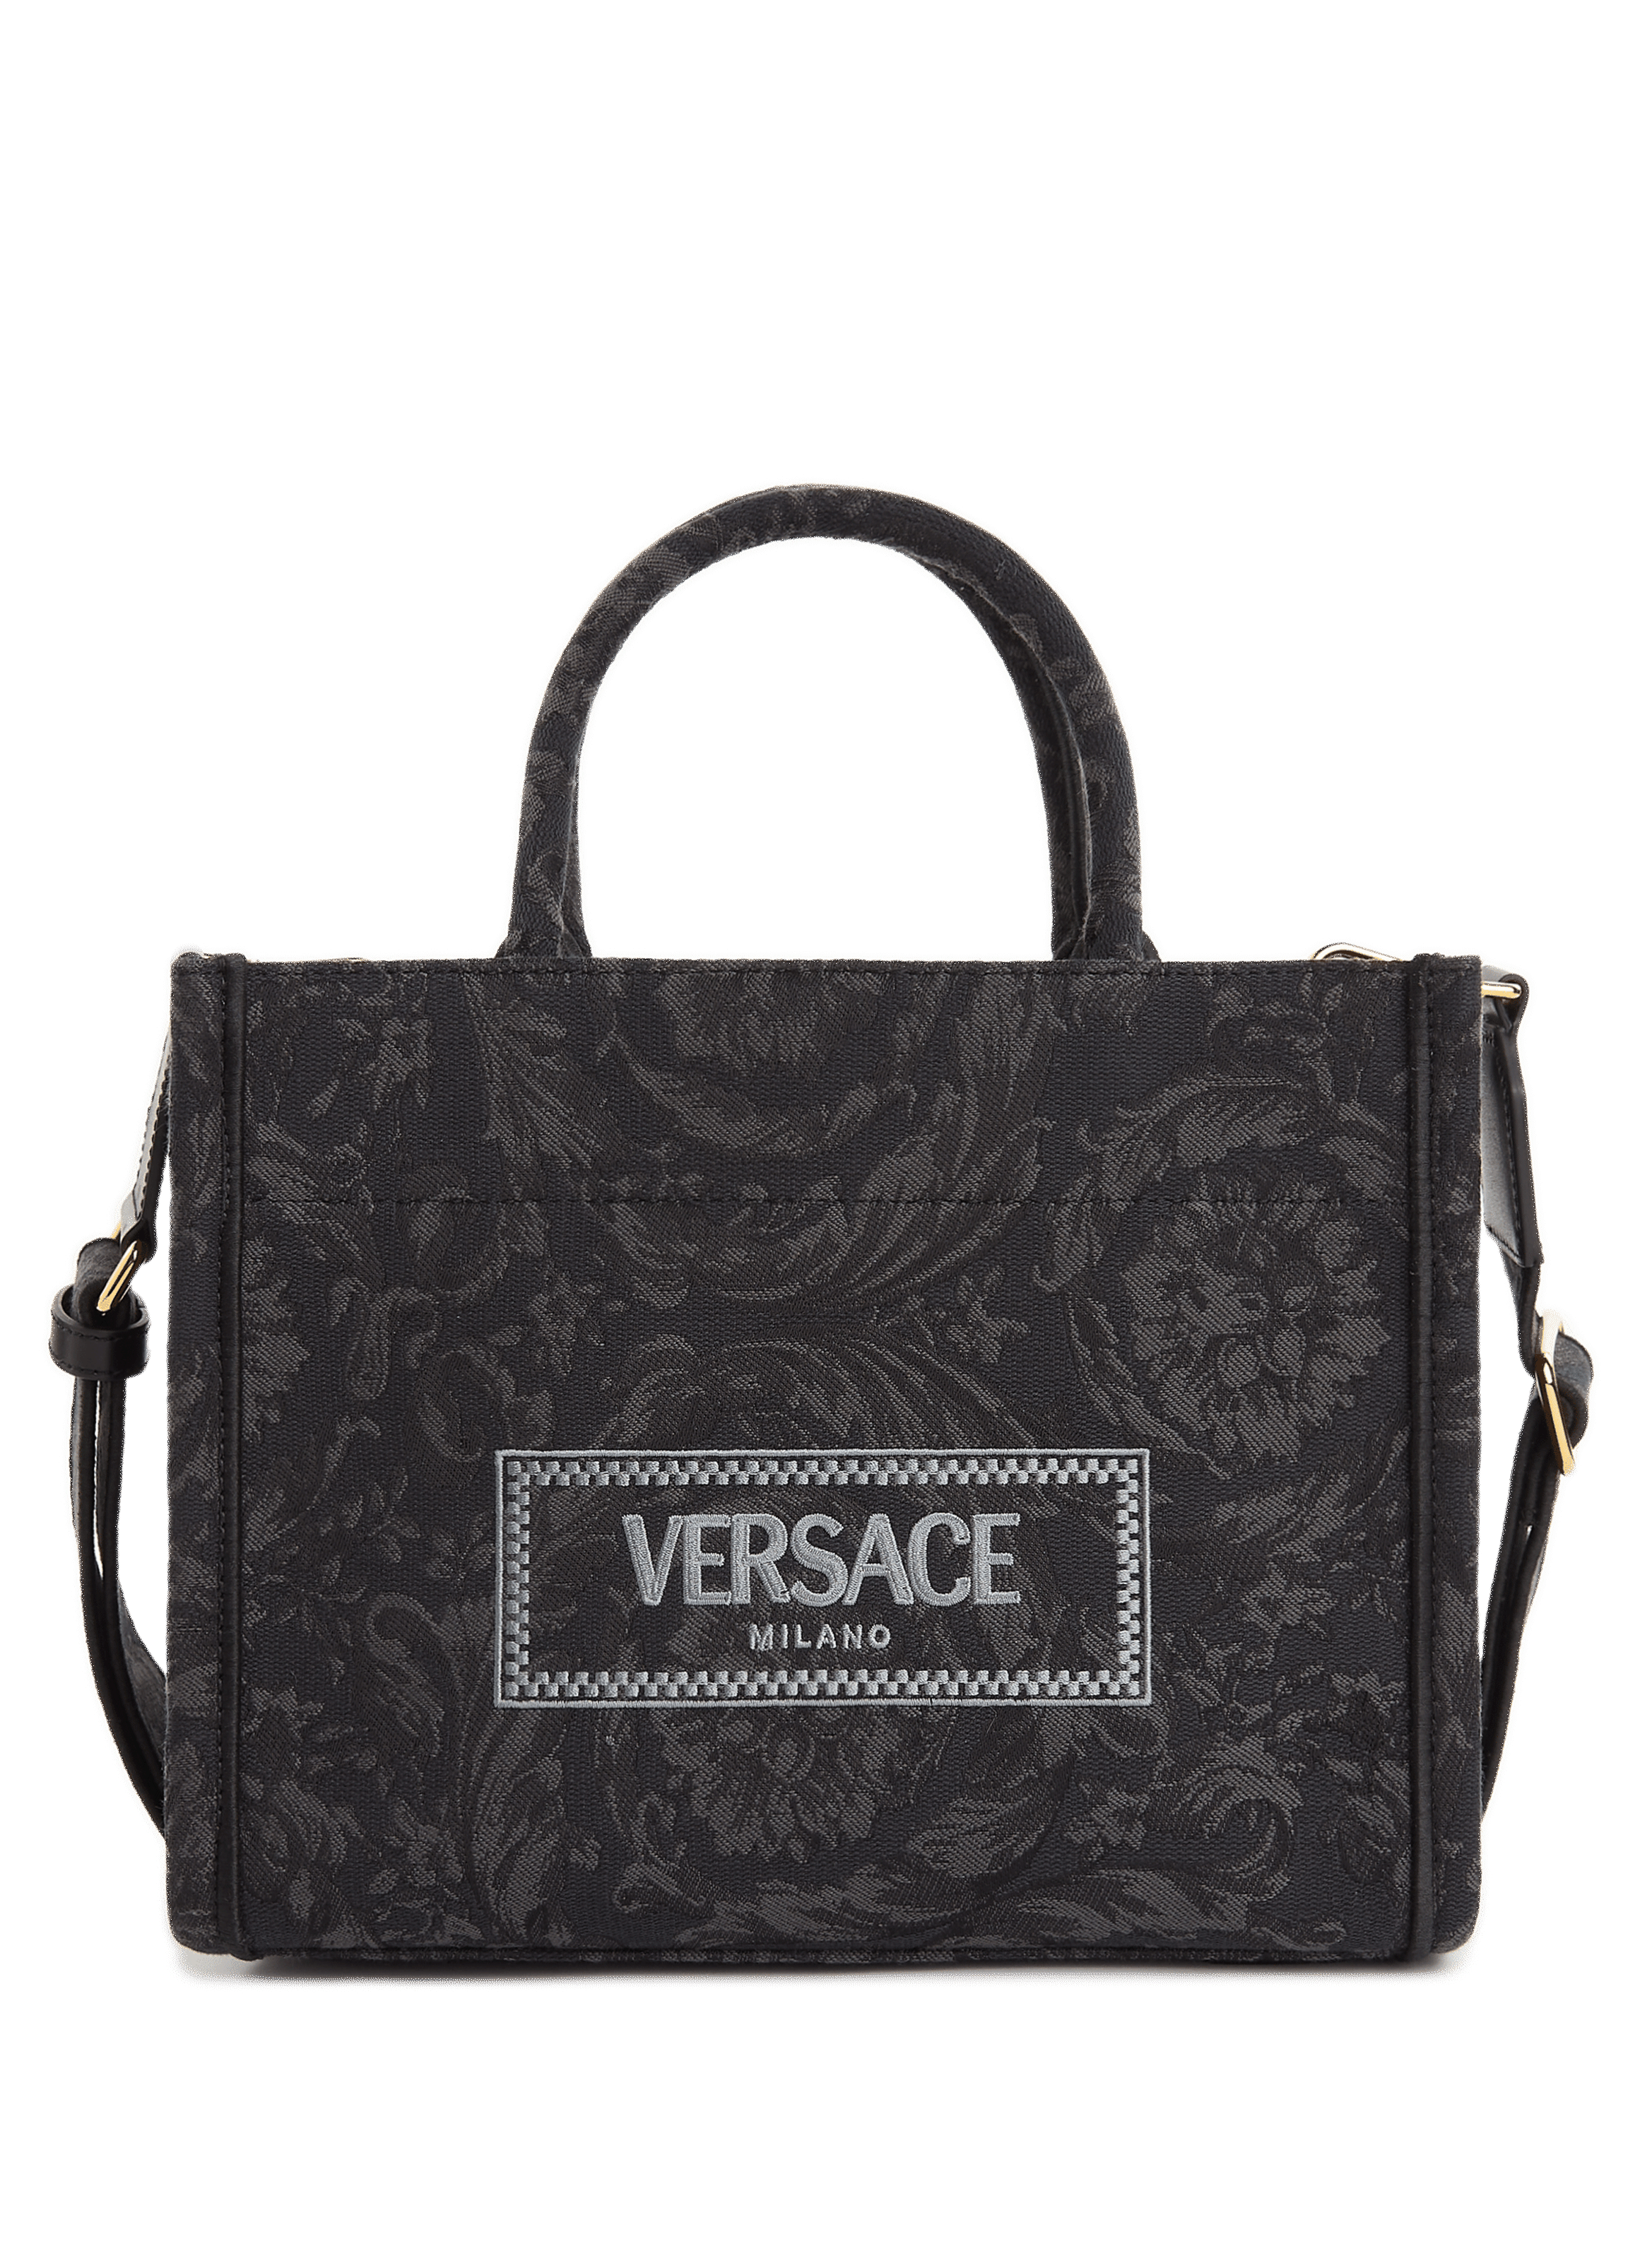 VERSACE Bags & Handbags for Women- Sale